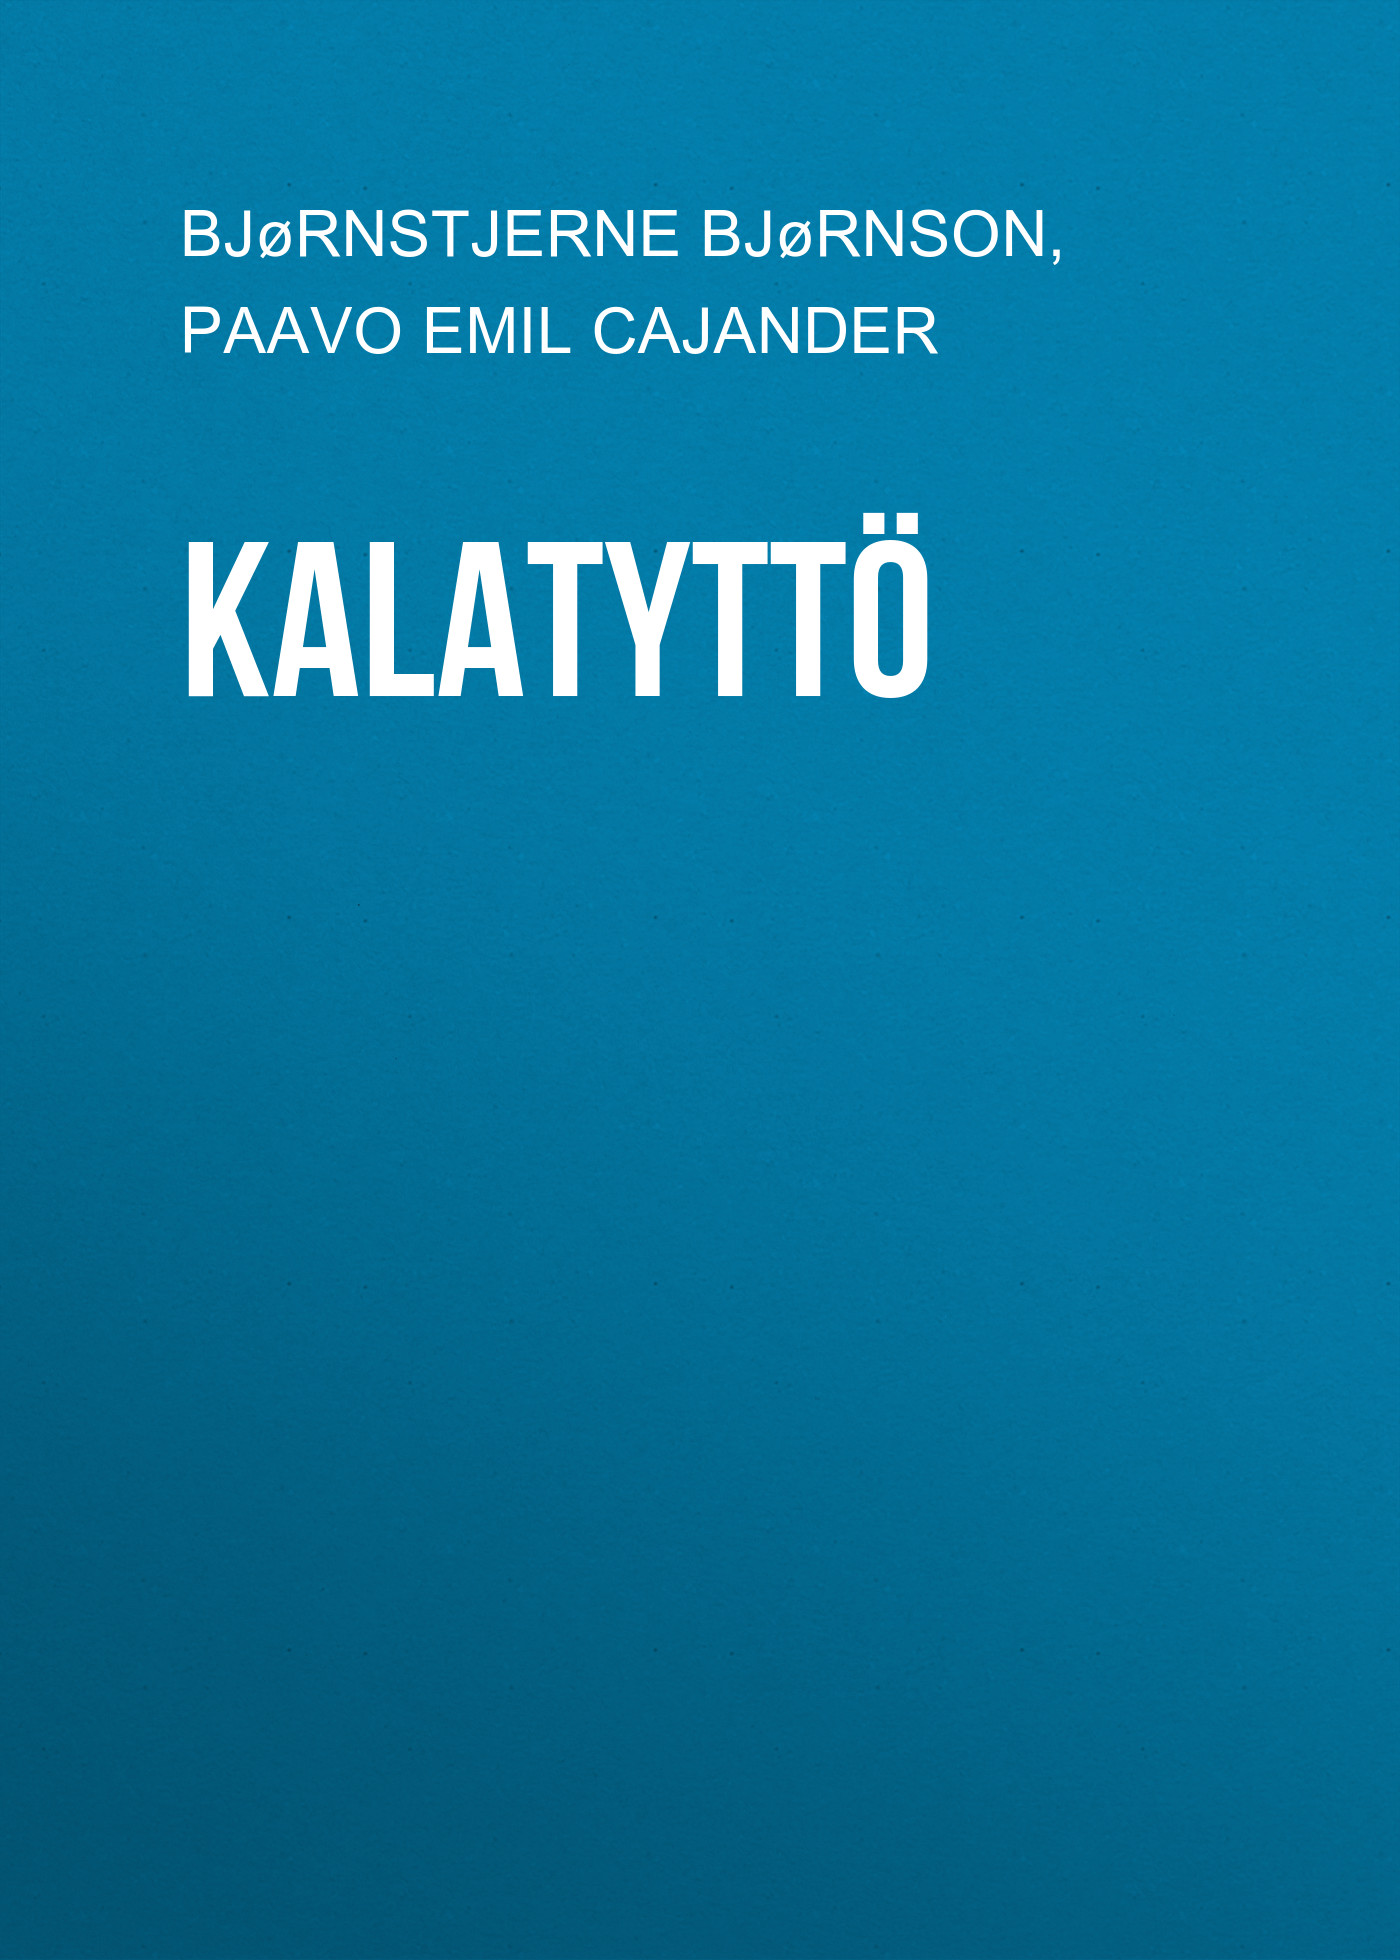 Книга Kalatyttö из серии , созданная Paavo Cajander, Bjørnstjerne Bjørnson, может относится к жанру Зарубежная старинная литература, Зарубежная классика. Стоимость электронной книги Kalatyttö с идентификатором 24178612 составляет 0 руб.